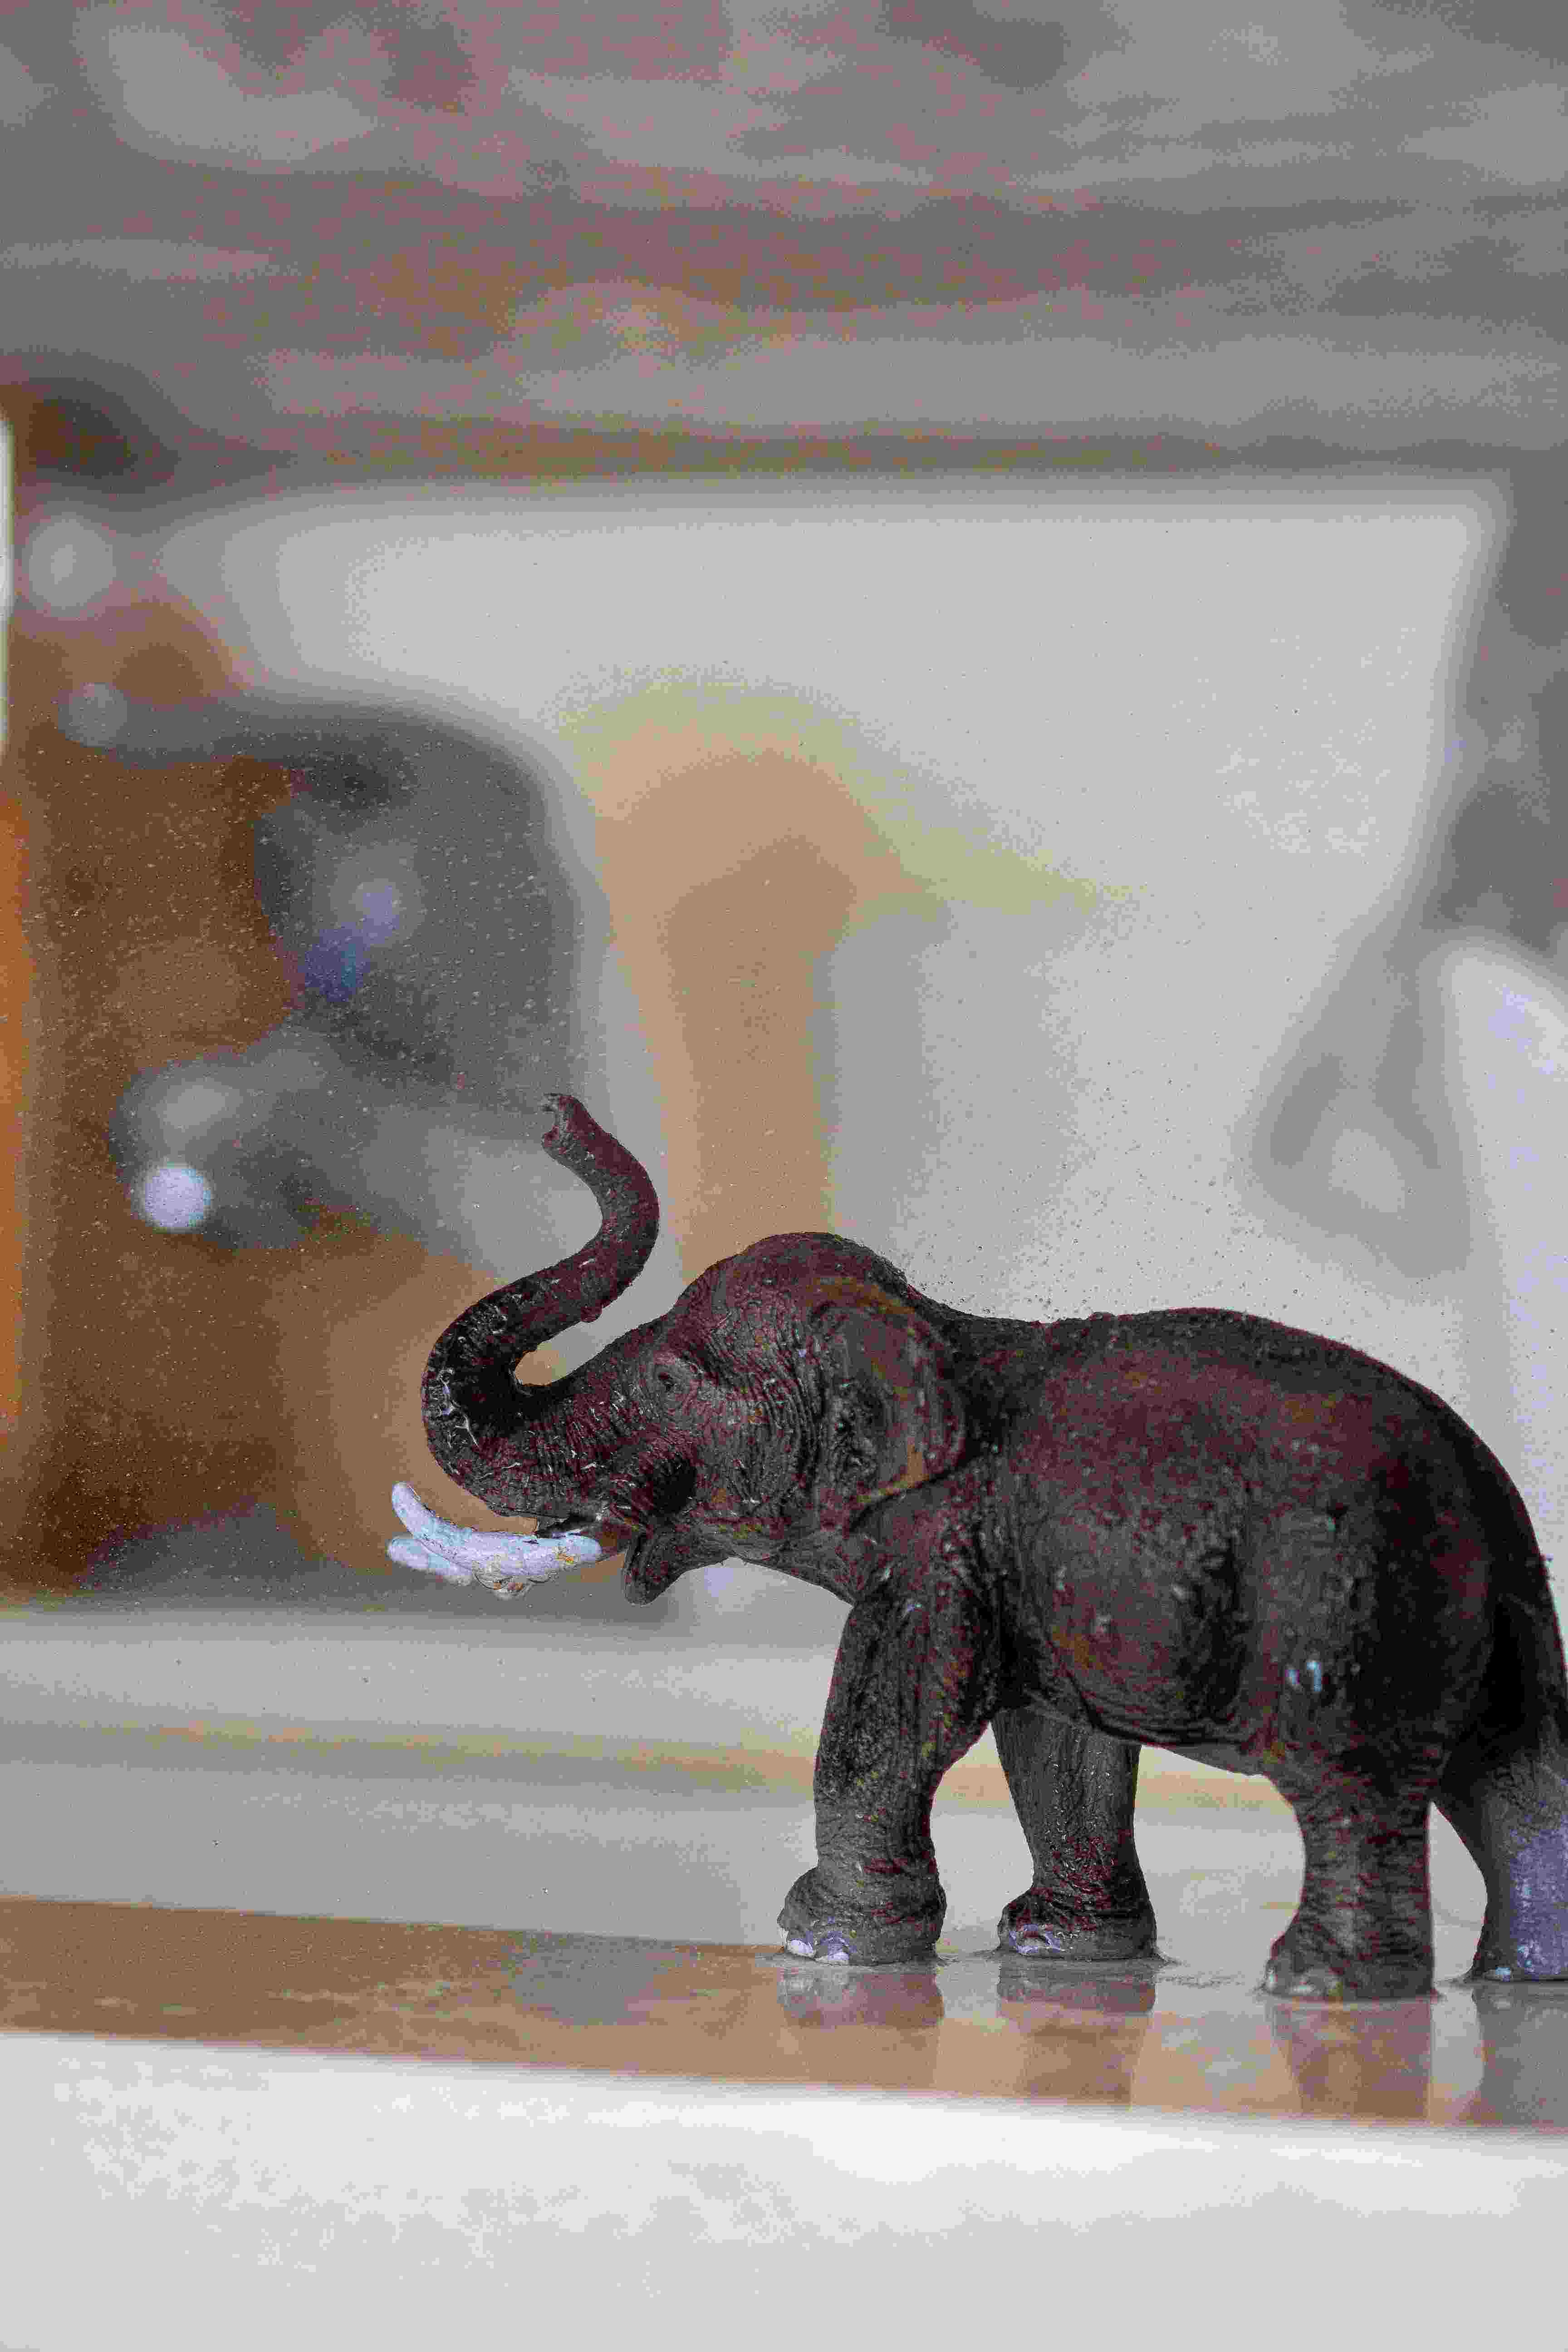 Toy elephant near sink spraying water